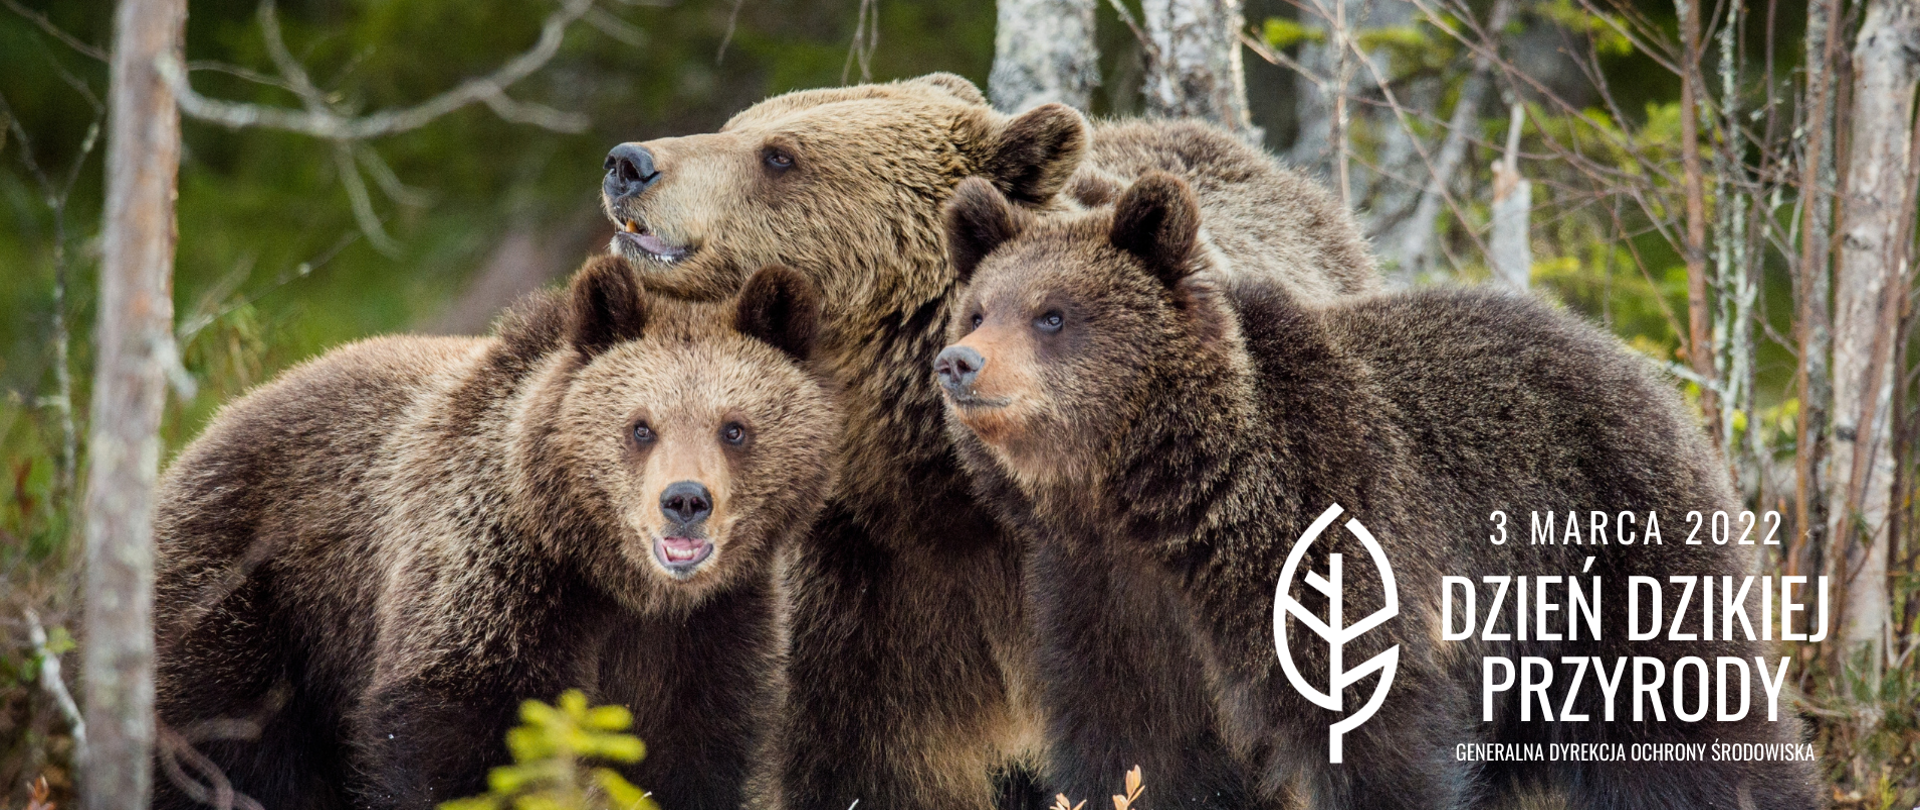 Dzień Dzikiej Przyrody - na zdjęciu widać trzy niedźwiedzie